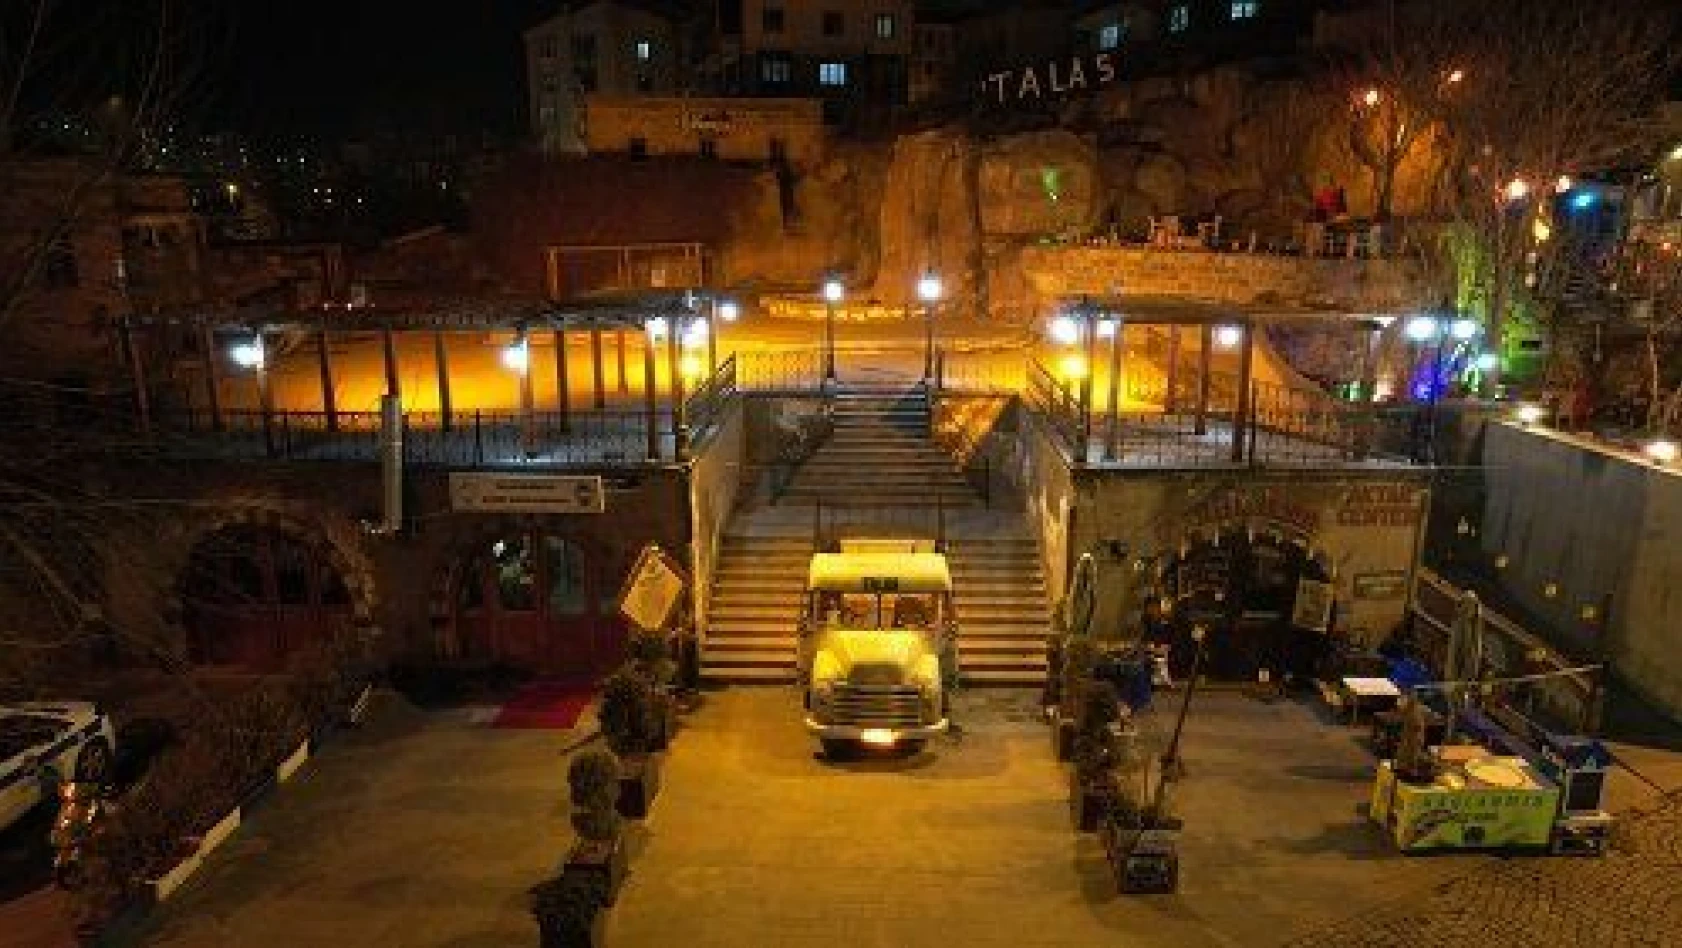 Talas'ın tarihi sokağı ışıl ışıl